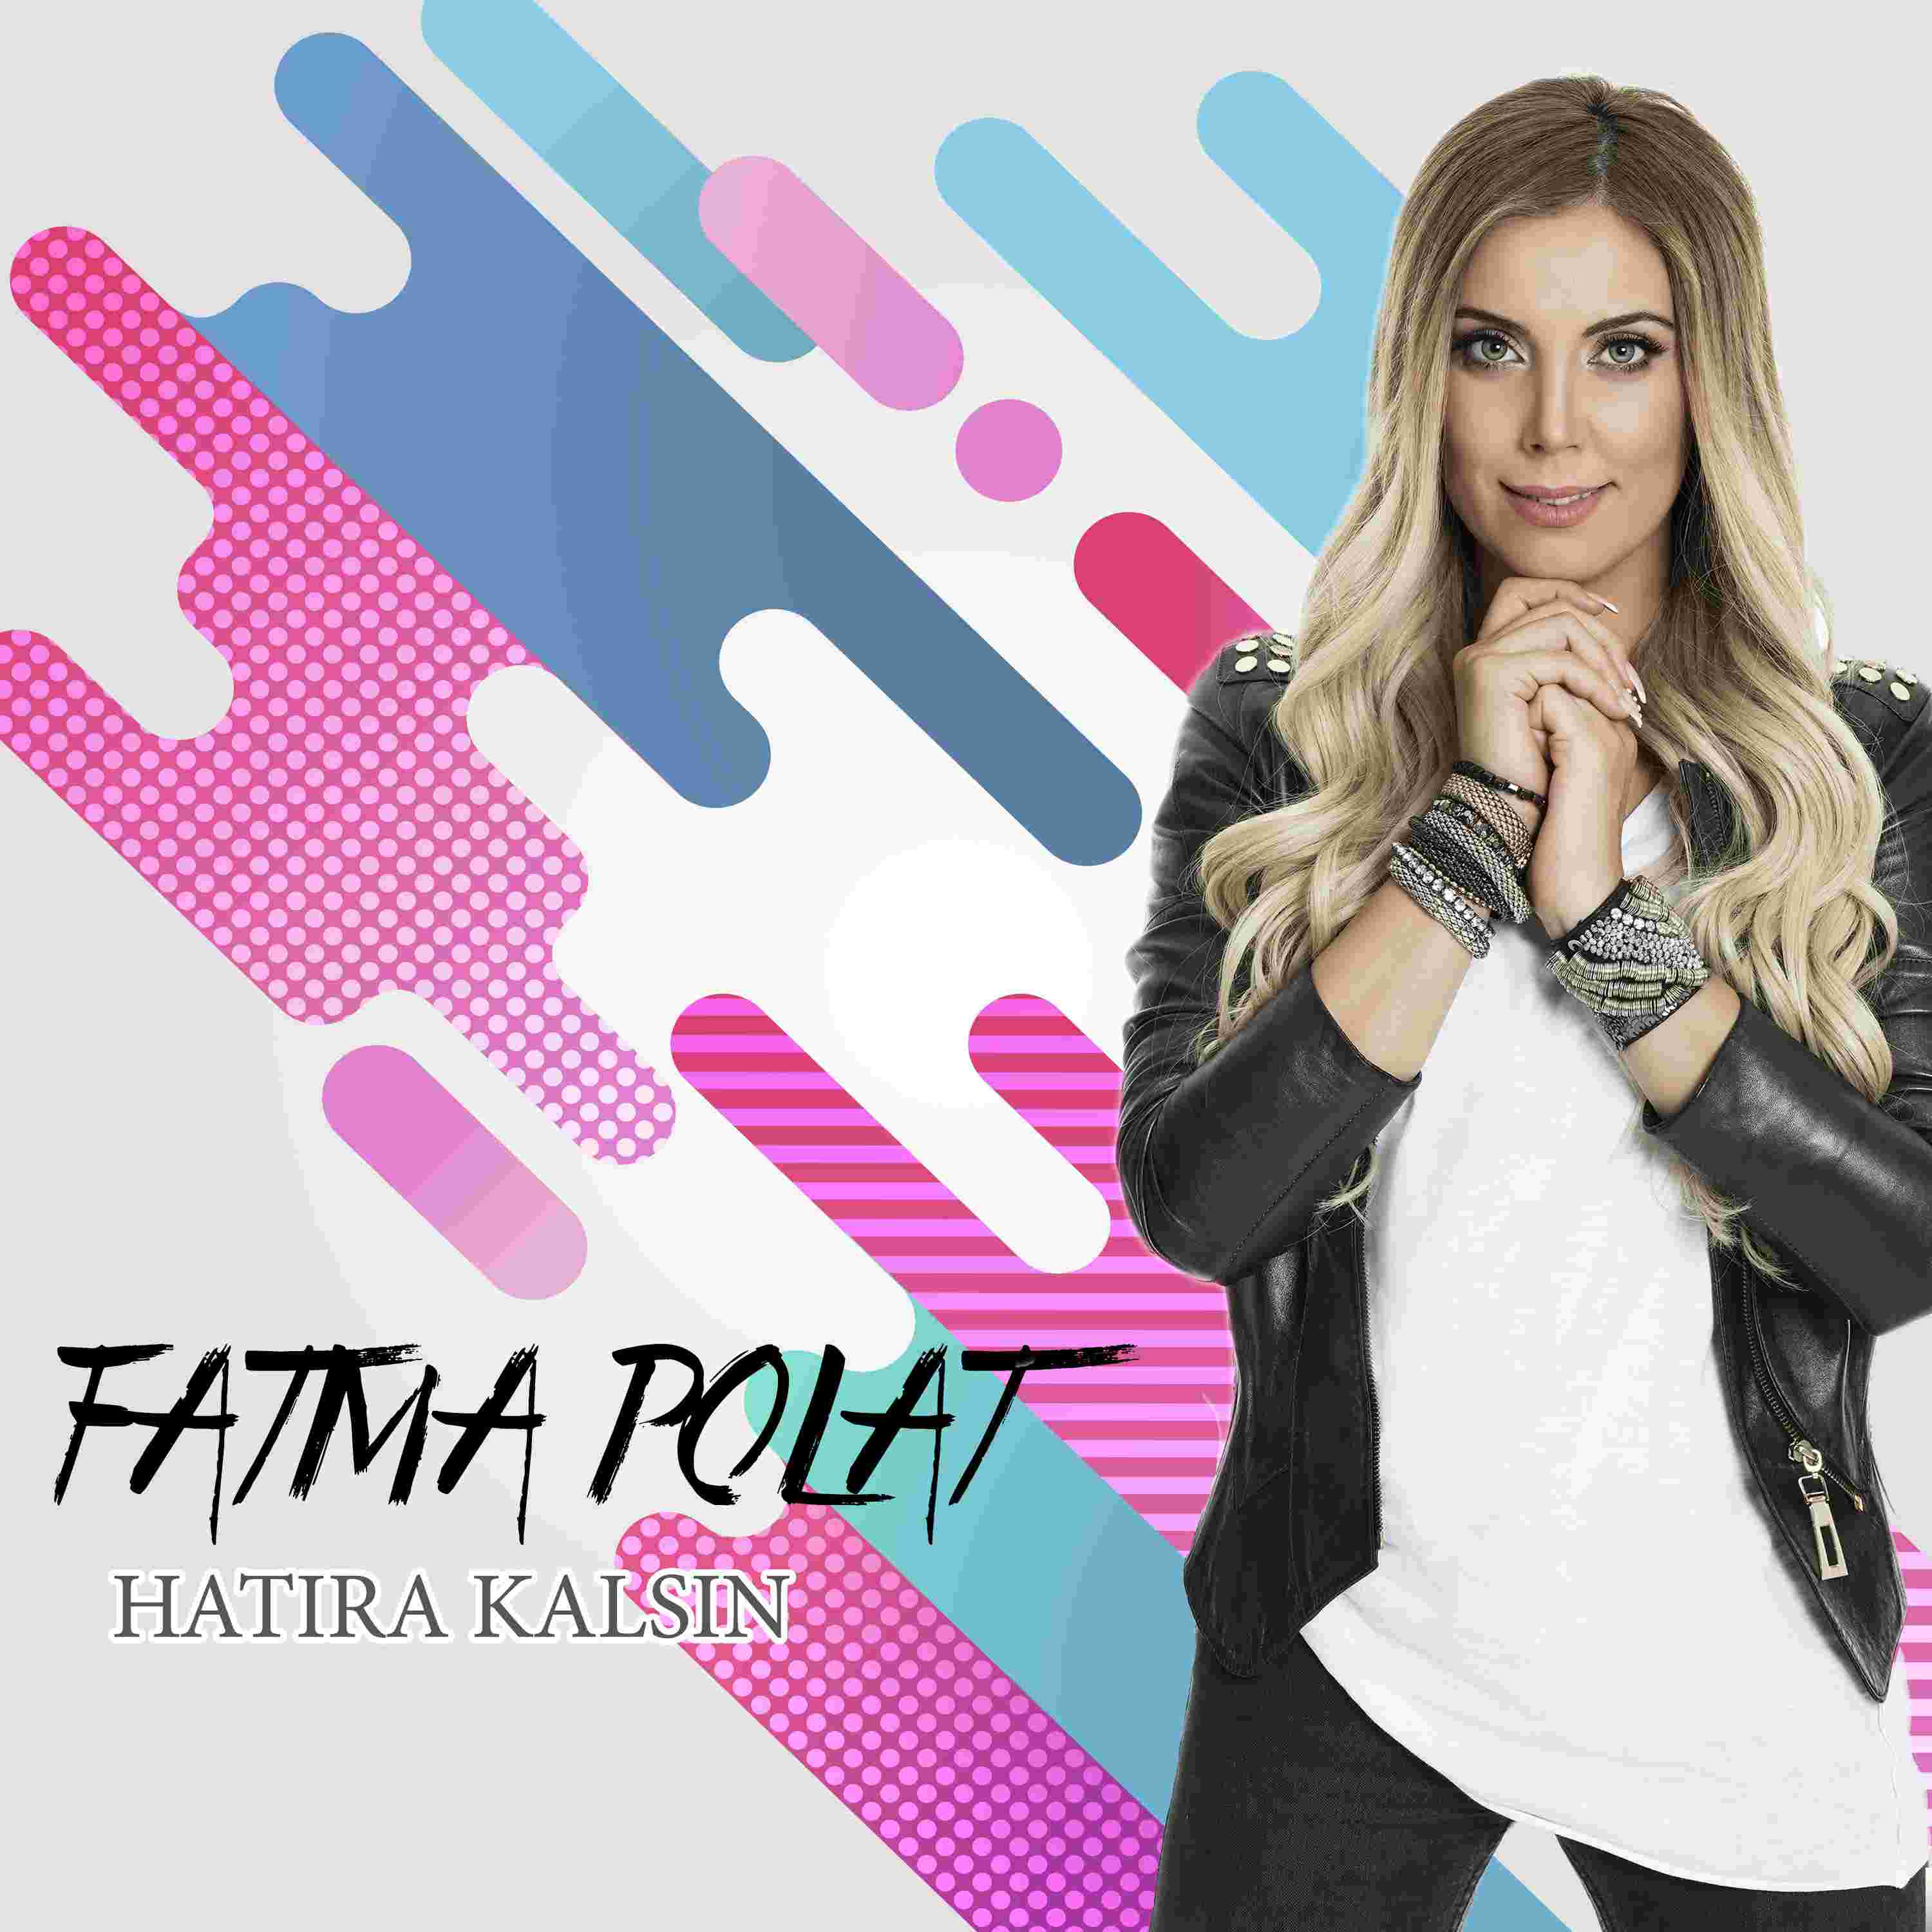 Fatma Polat Hatıra Kalsın (2018)